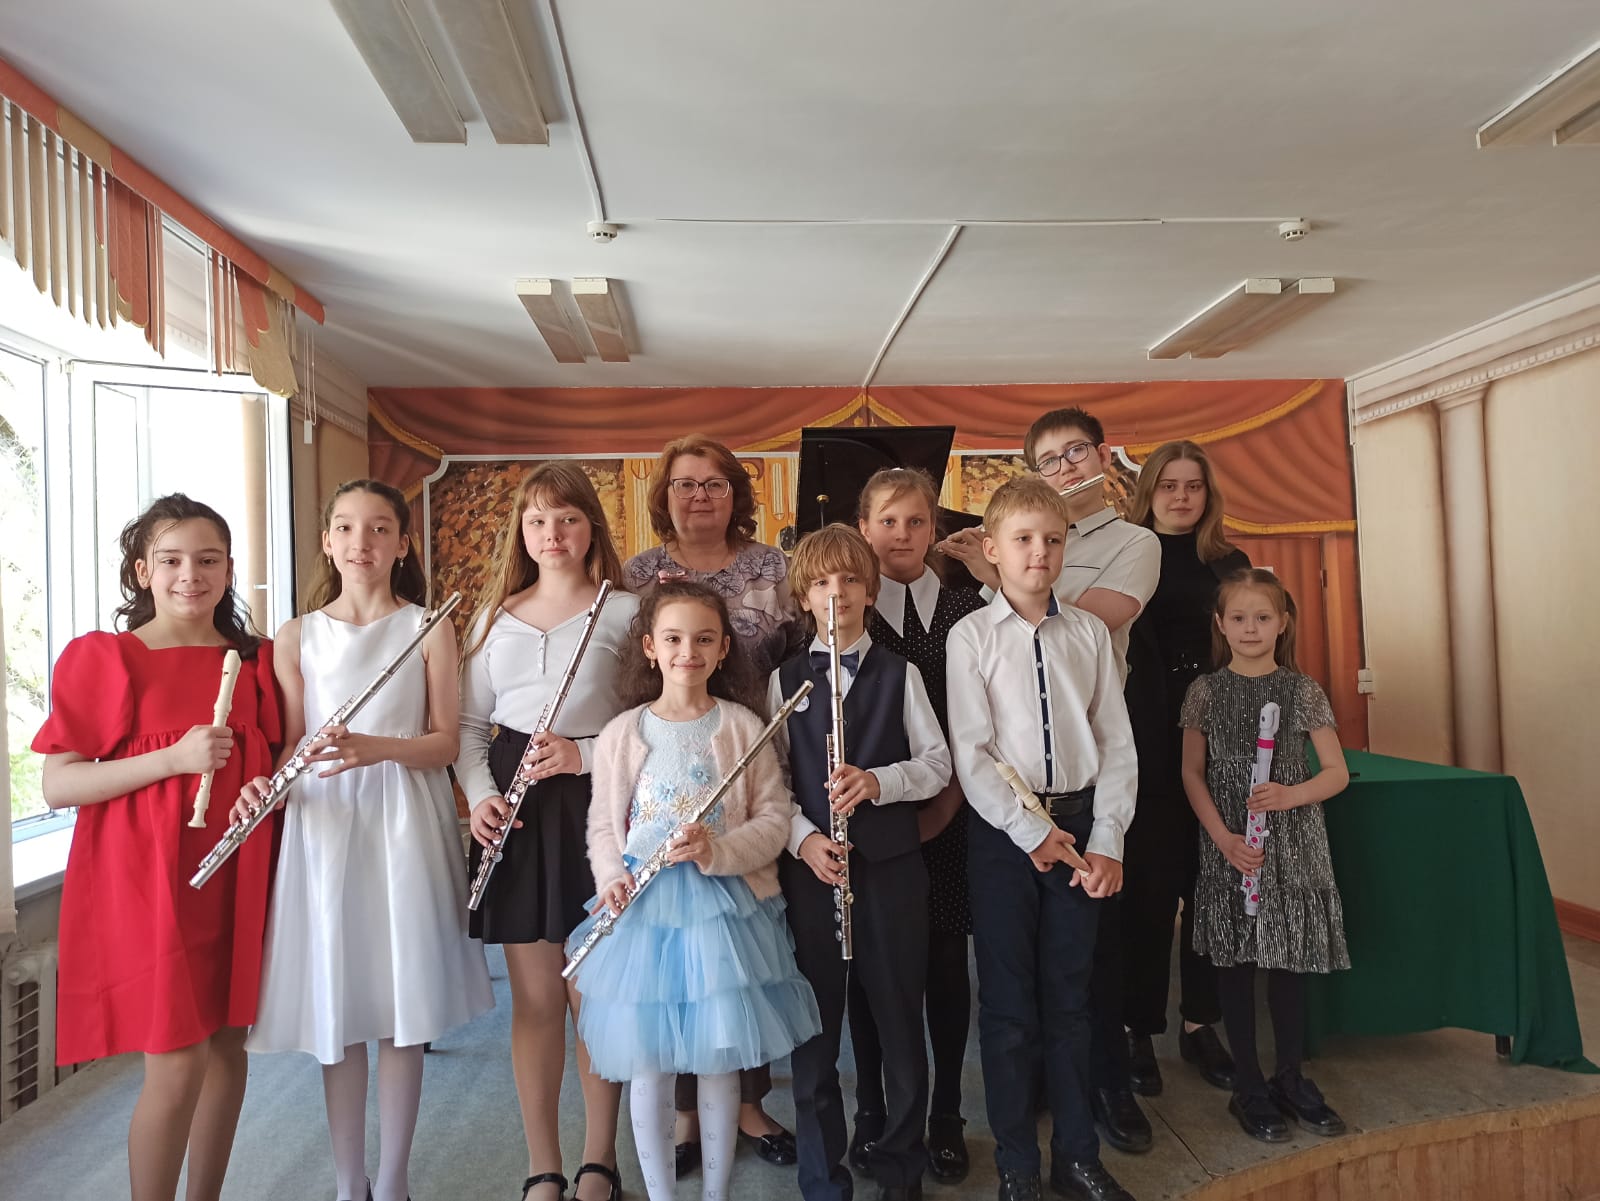 18 мая состоялся концерт учеников классов преподавателей Куликовой Т. И. и Конаковой М. А.